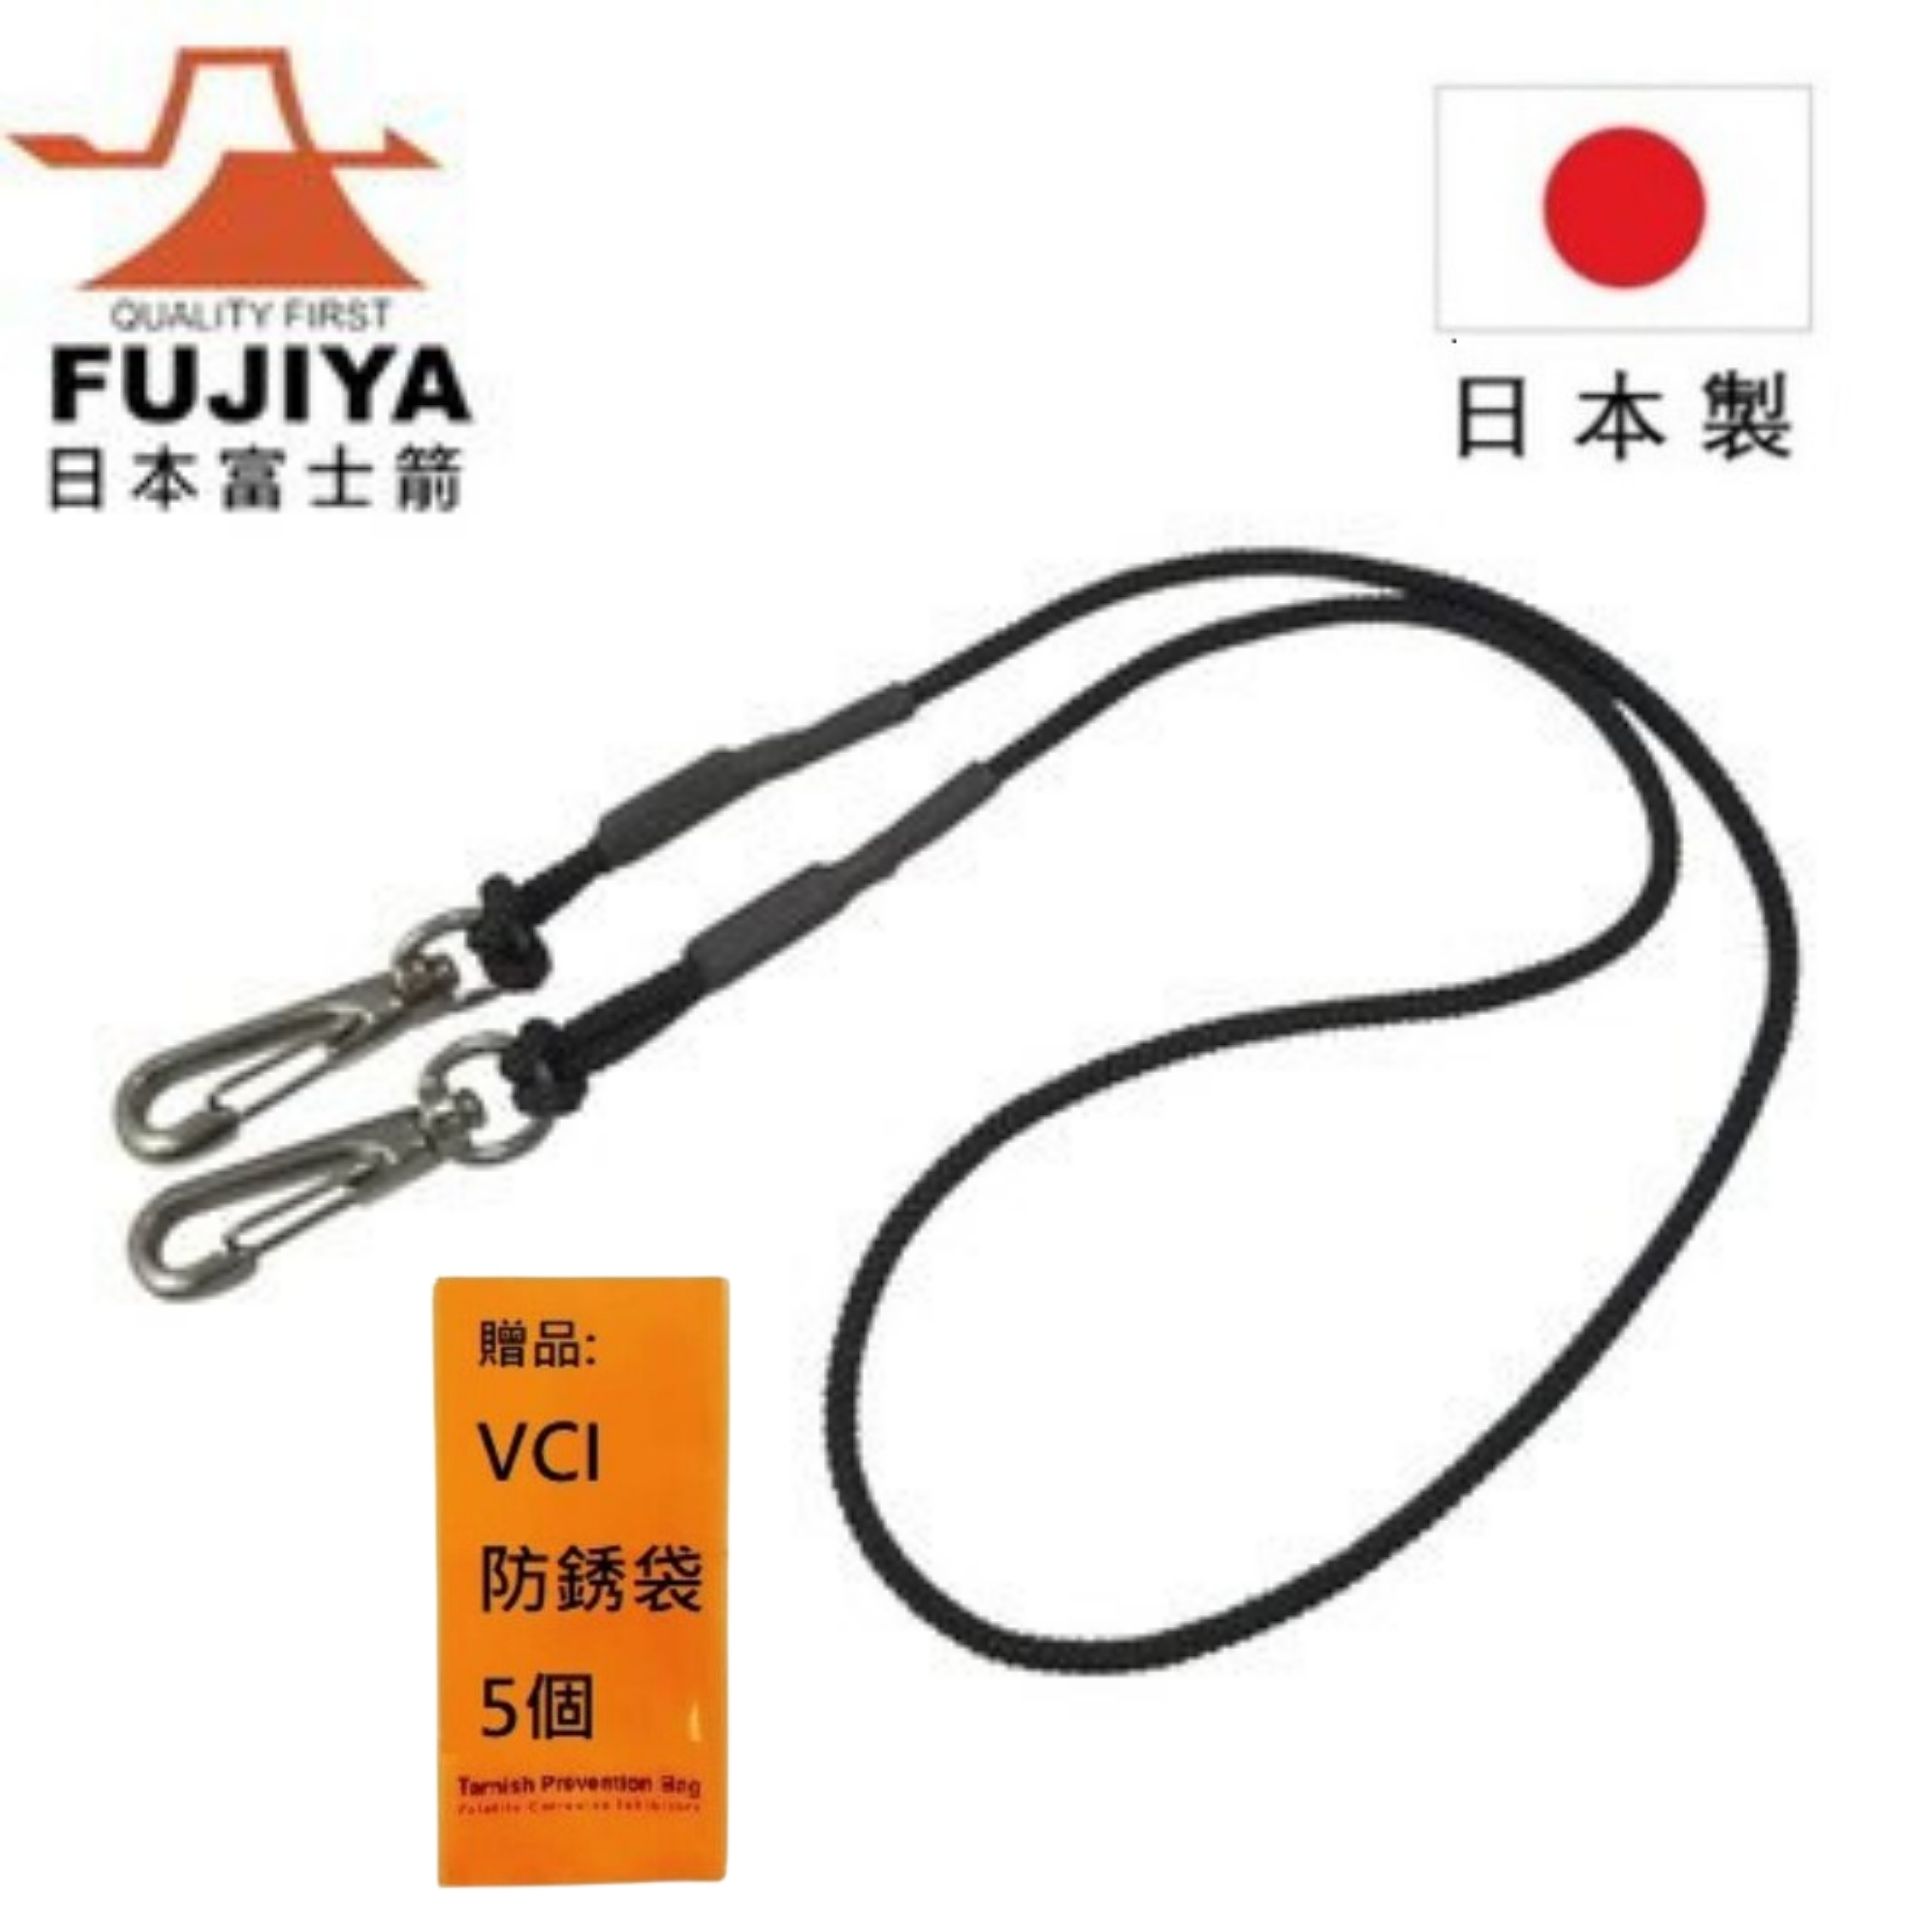 【日本Fujiya富士箭】工具安全吊繩-1KG 黑 FSC-1S-BK